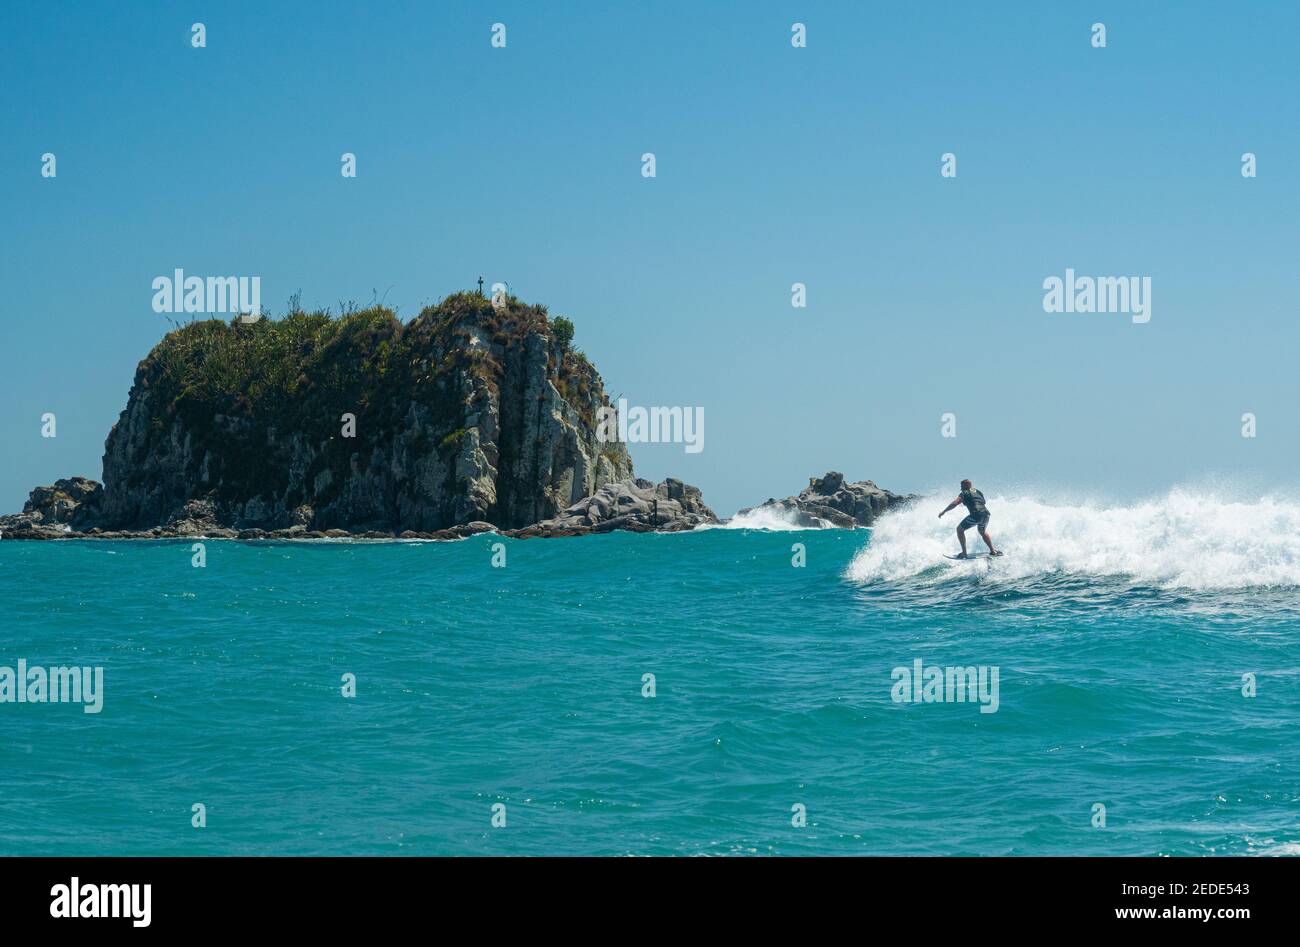 Un uomo surfs su un aliscafo surf sulle onde turchesi a Mangawhai Heads, Nuova Zelanda. Cielo blu chiaro. Foto Stock